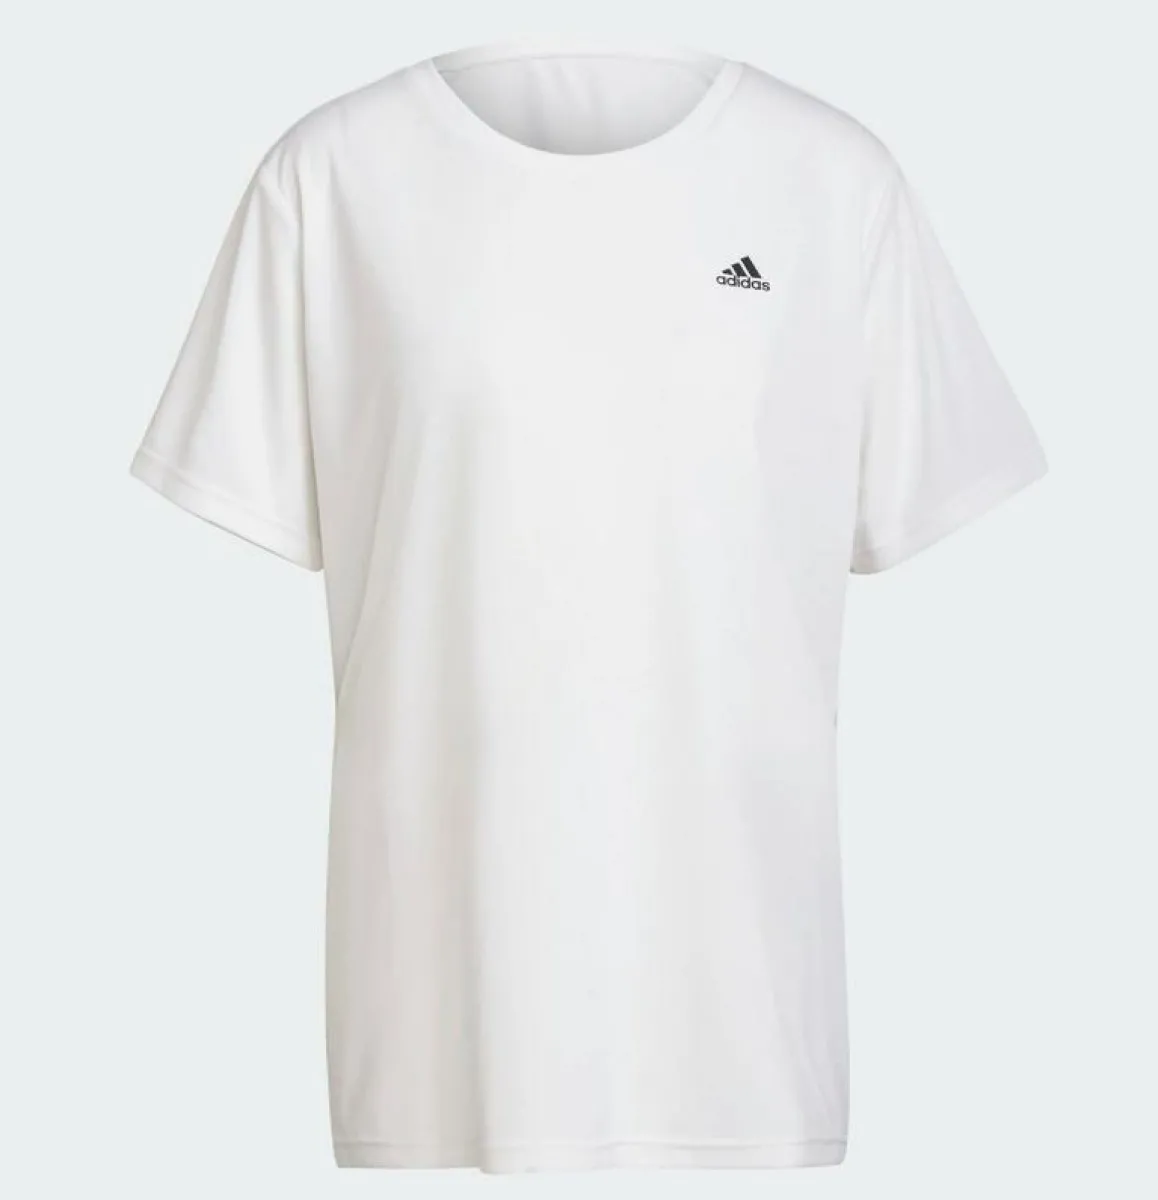 Camiseta adidas oversize blanca para mujer